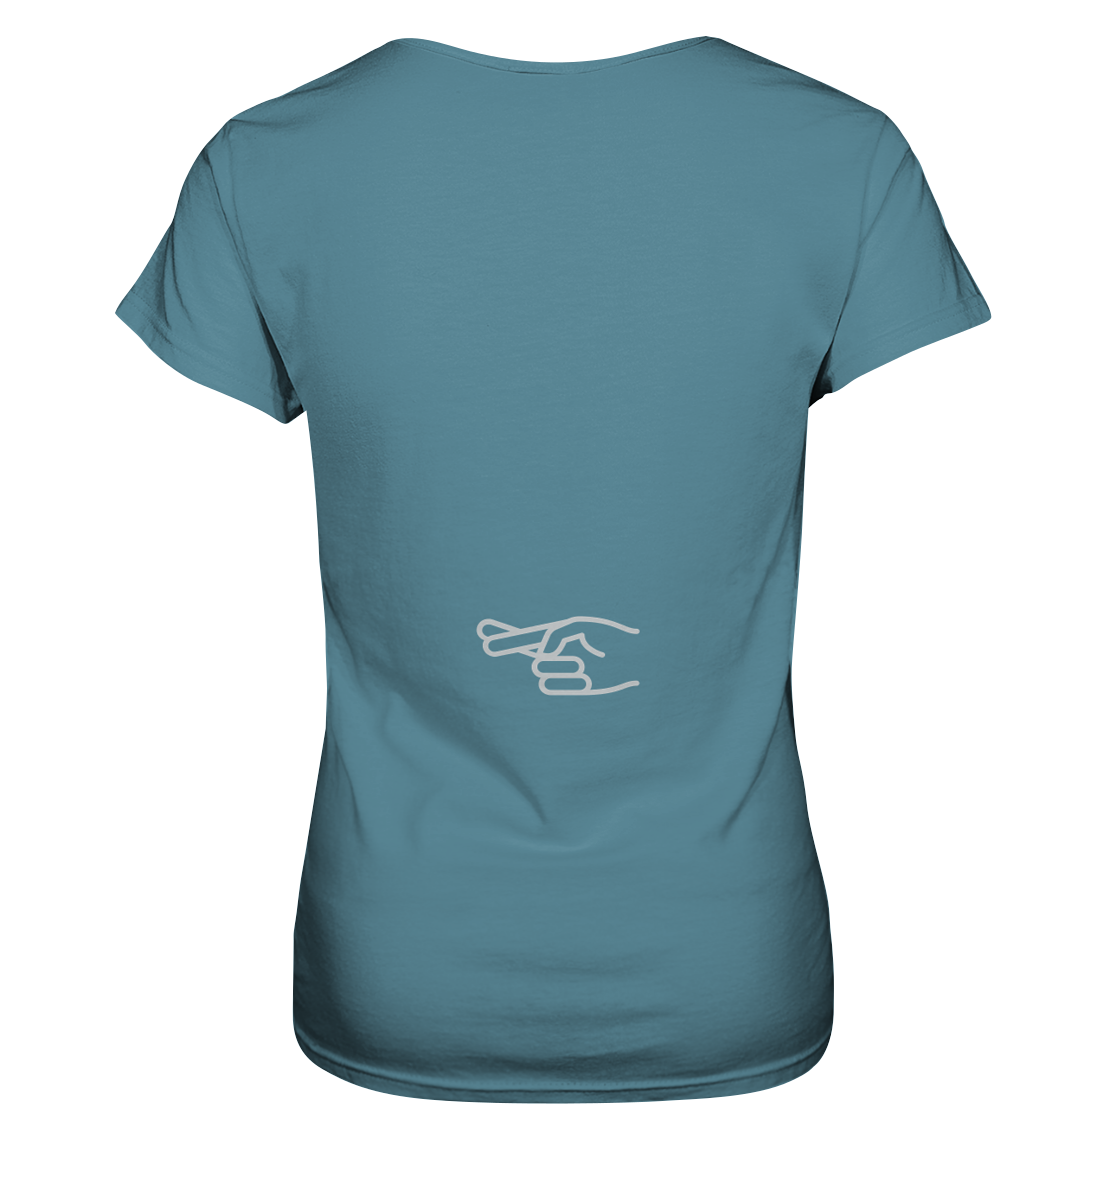 Damen-T-Shirt Rundhals-Ausschnitt, beidseitig bedruckt, vorn "Nur noch ein Motorrad - versprochen!" hinten crossed fingers, hell blau